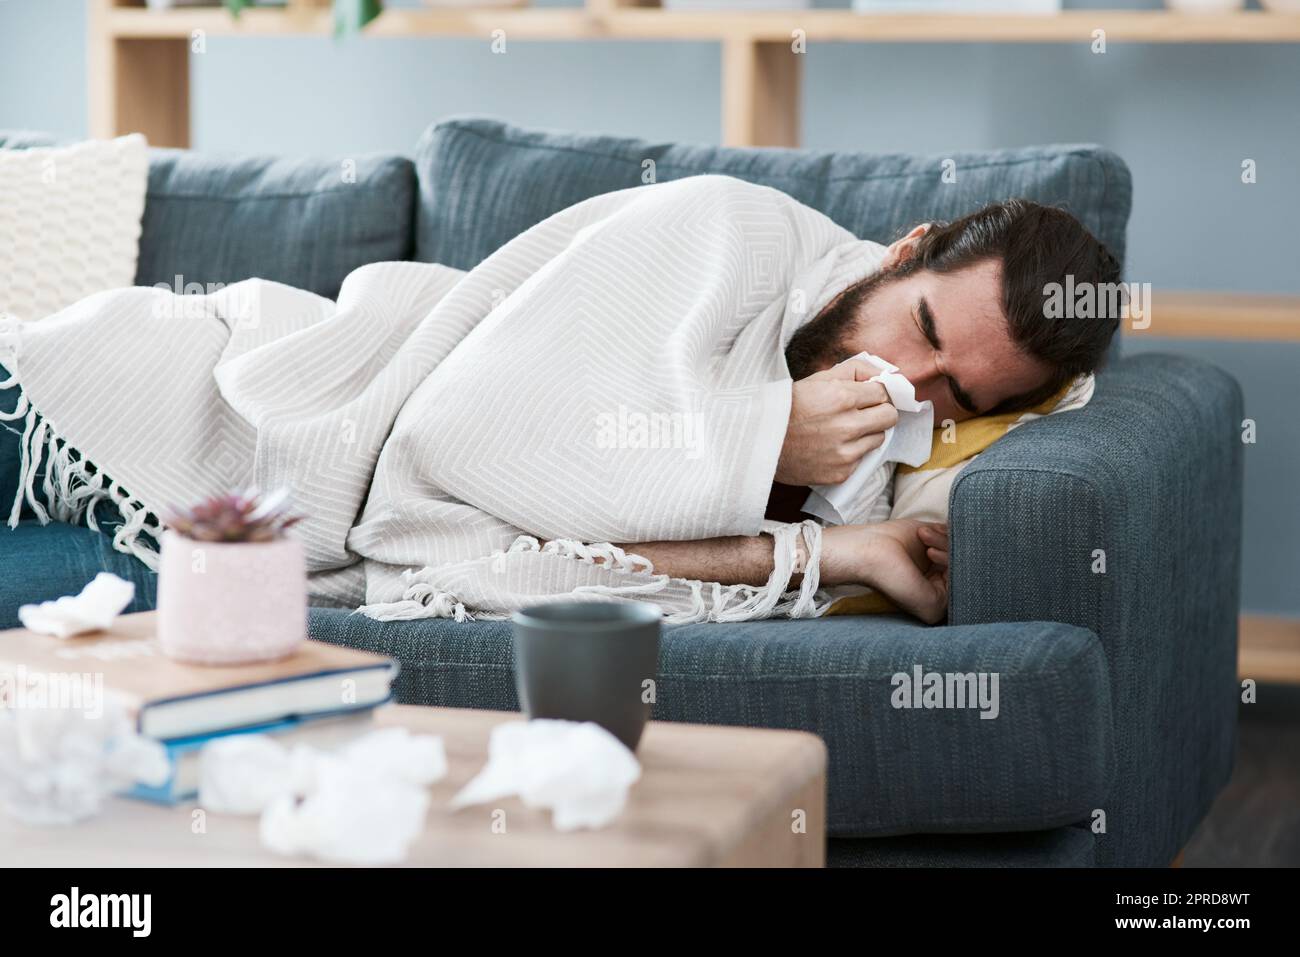 Im ammalato e divano cavalcato. Un giovane malvolo gli soffia il naso con un fazzoletto nel suo salotto. Foto Stock